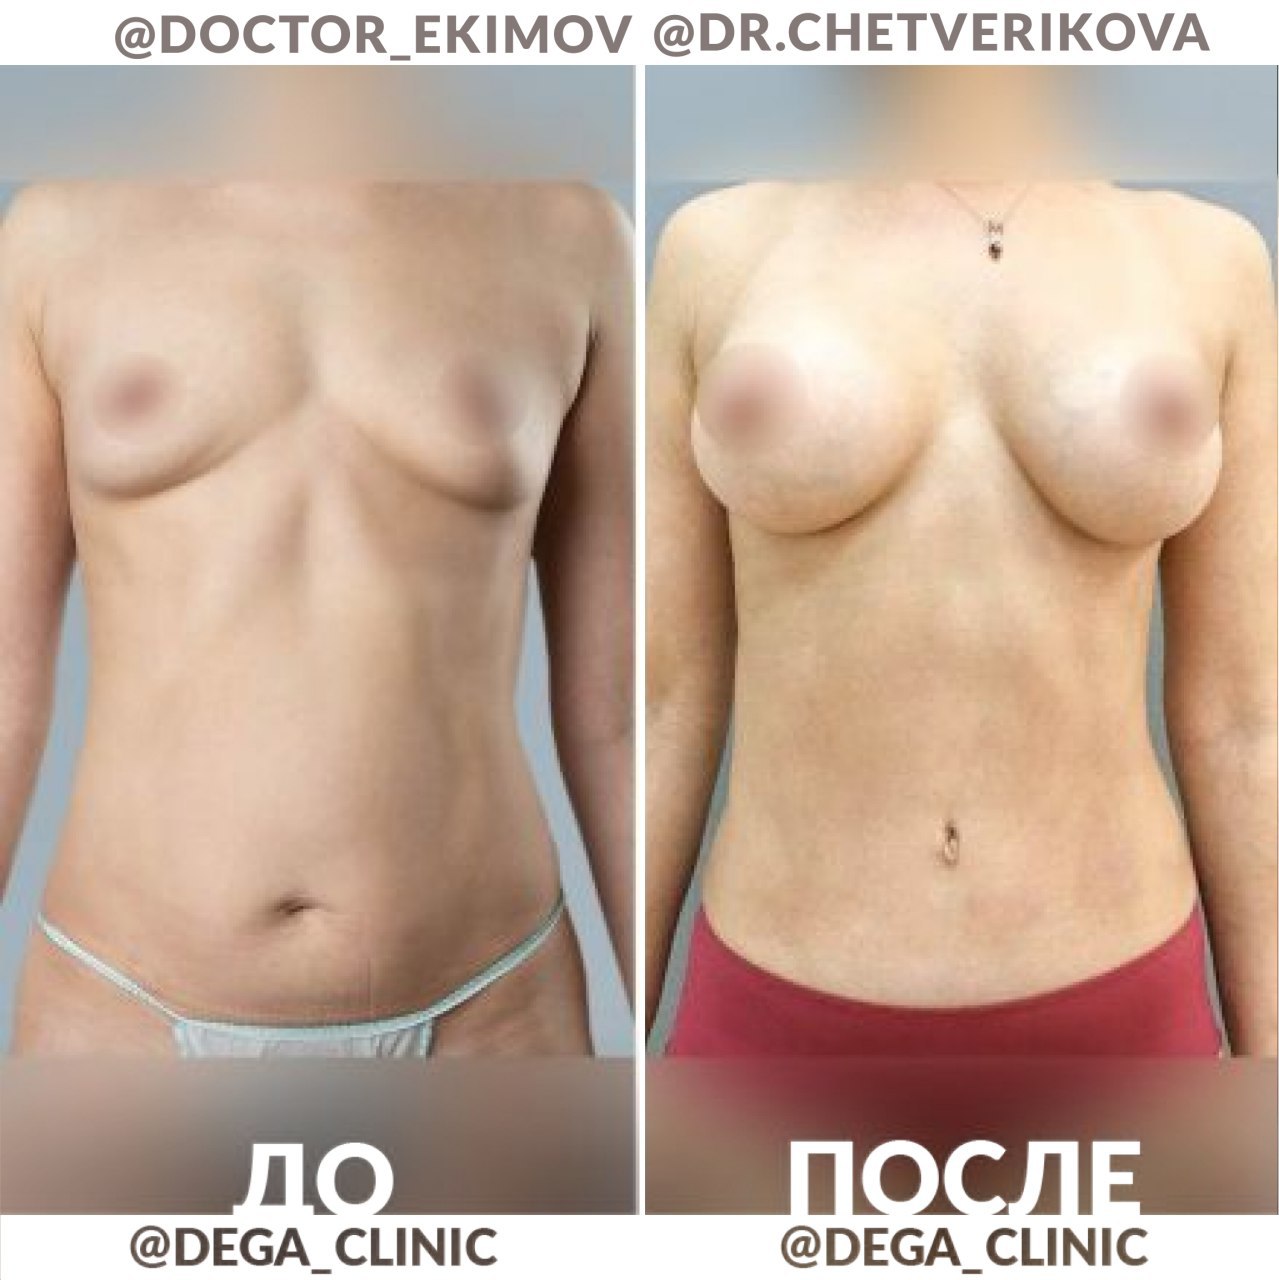 асимметрия груди у женщин форум фото 117